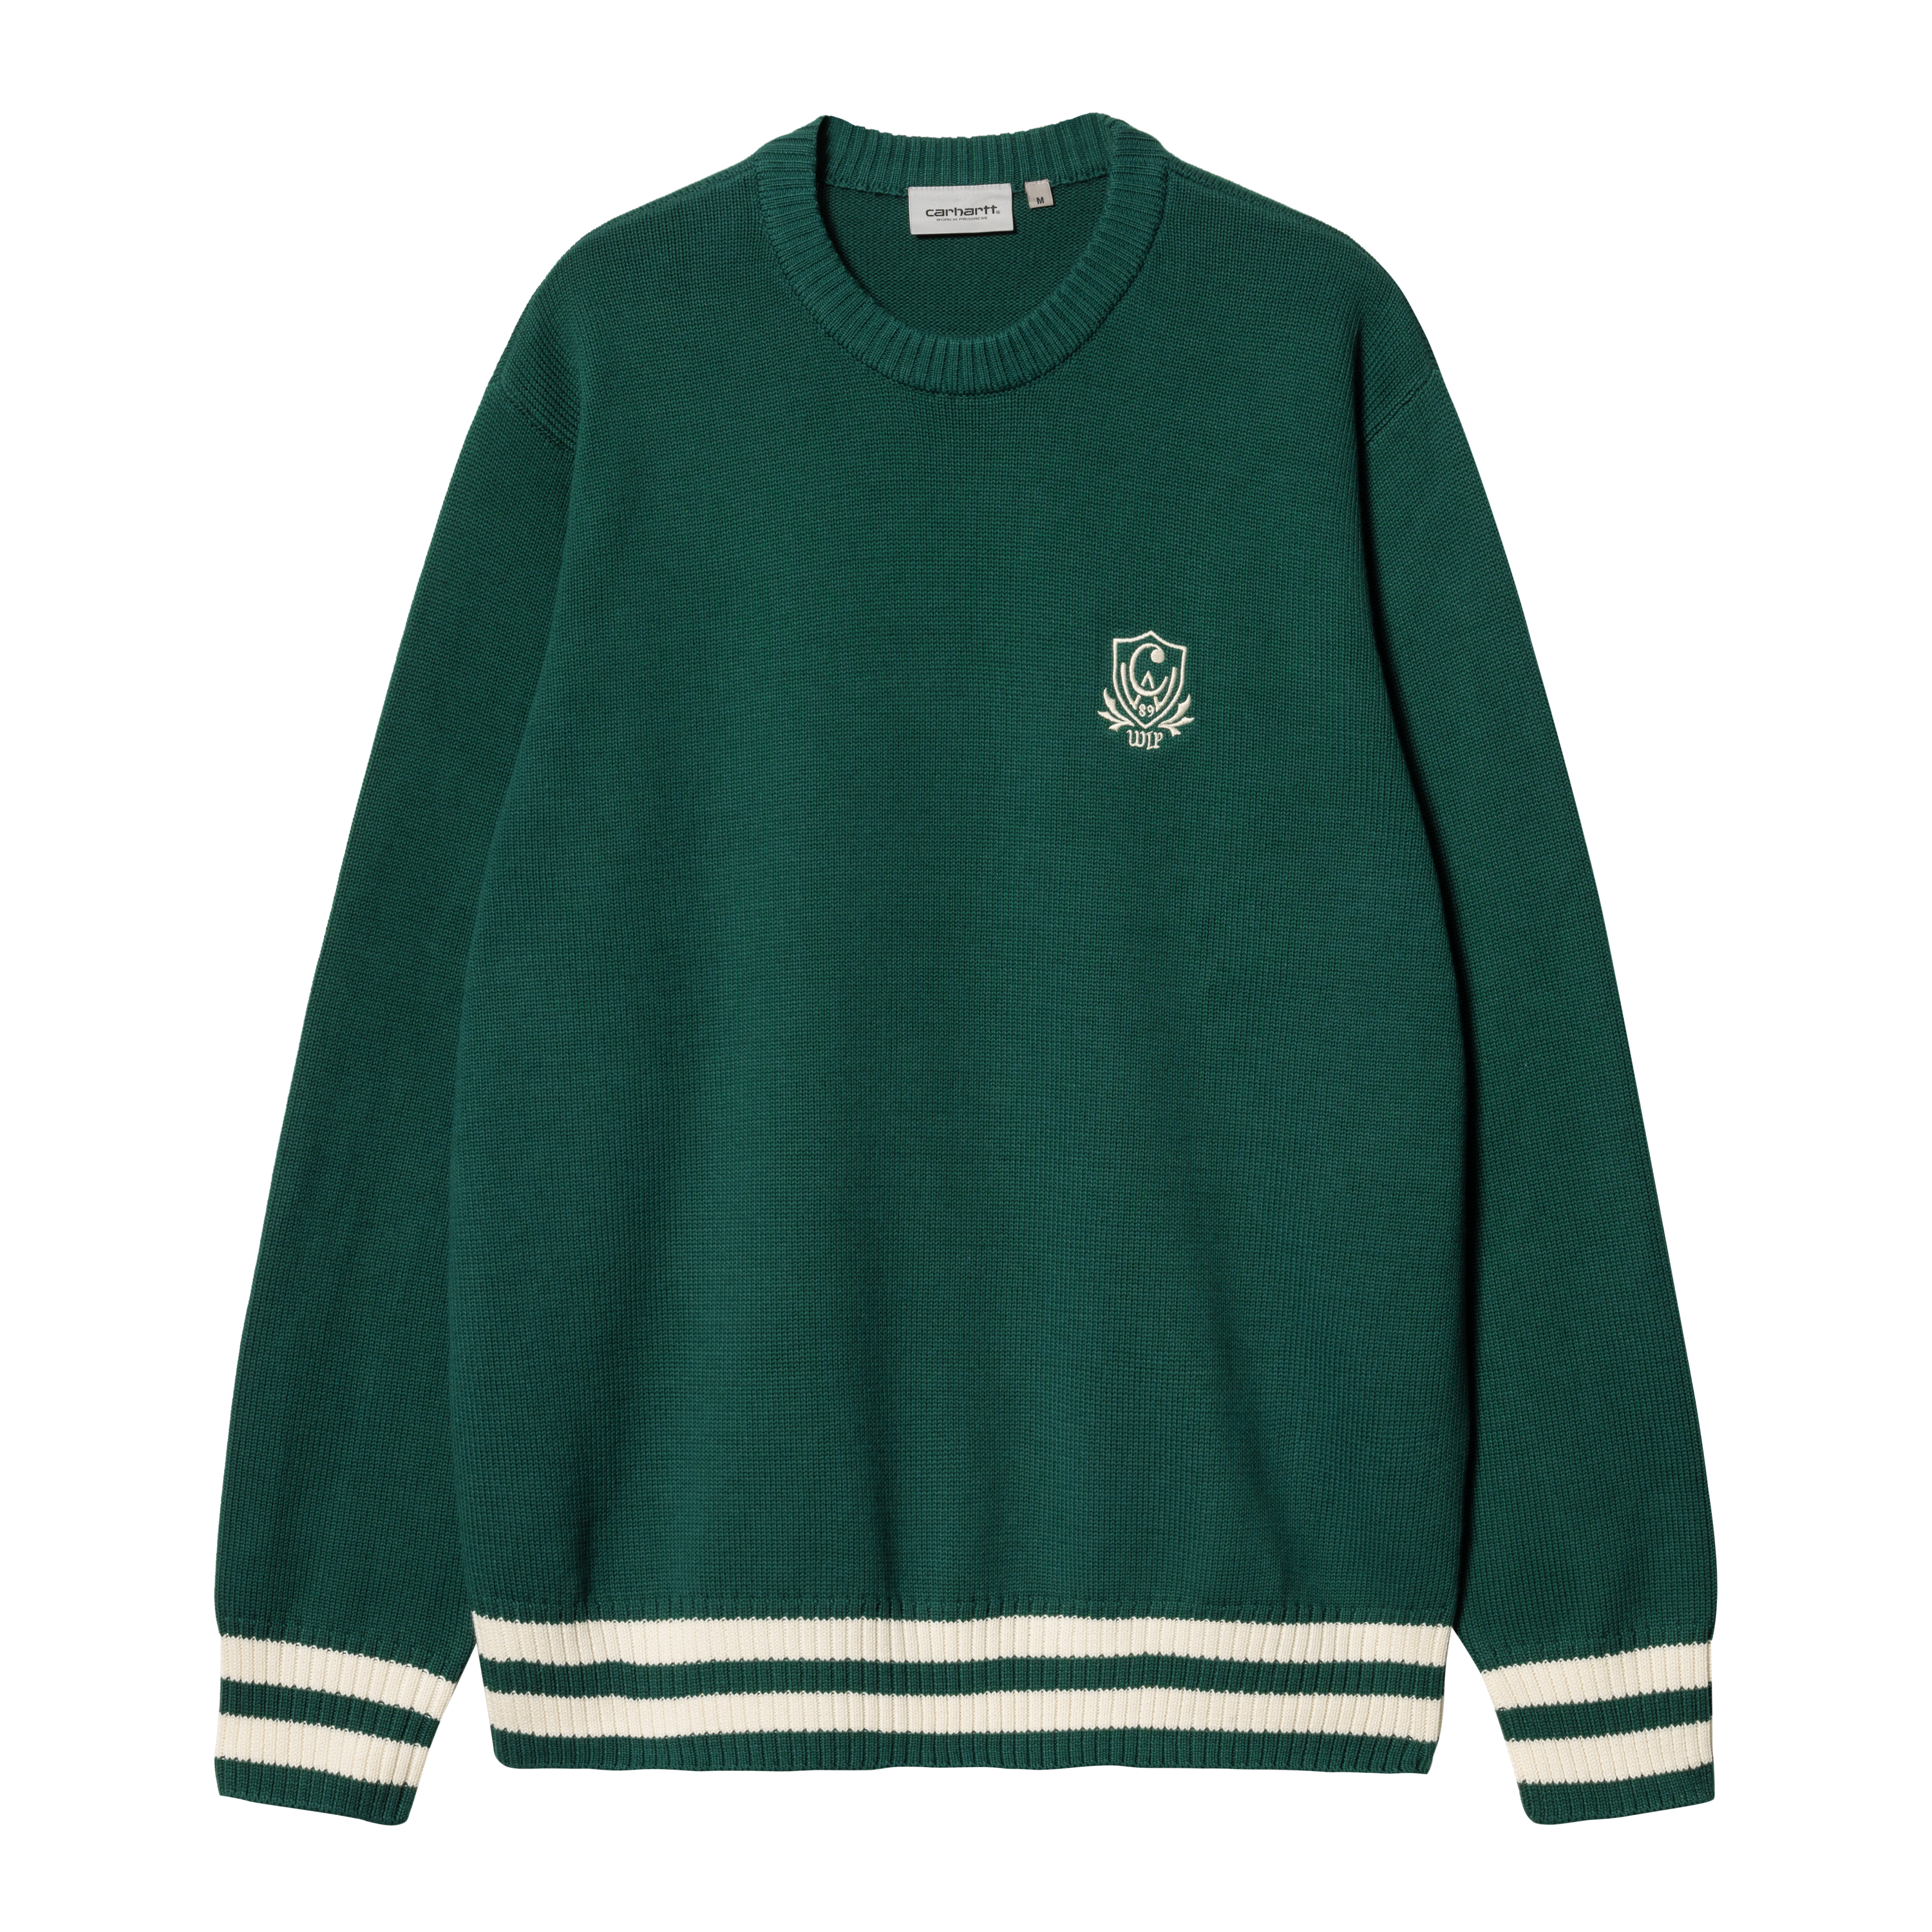 Carhartt WIP Cambridge Sweater in Green